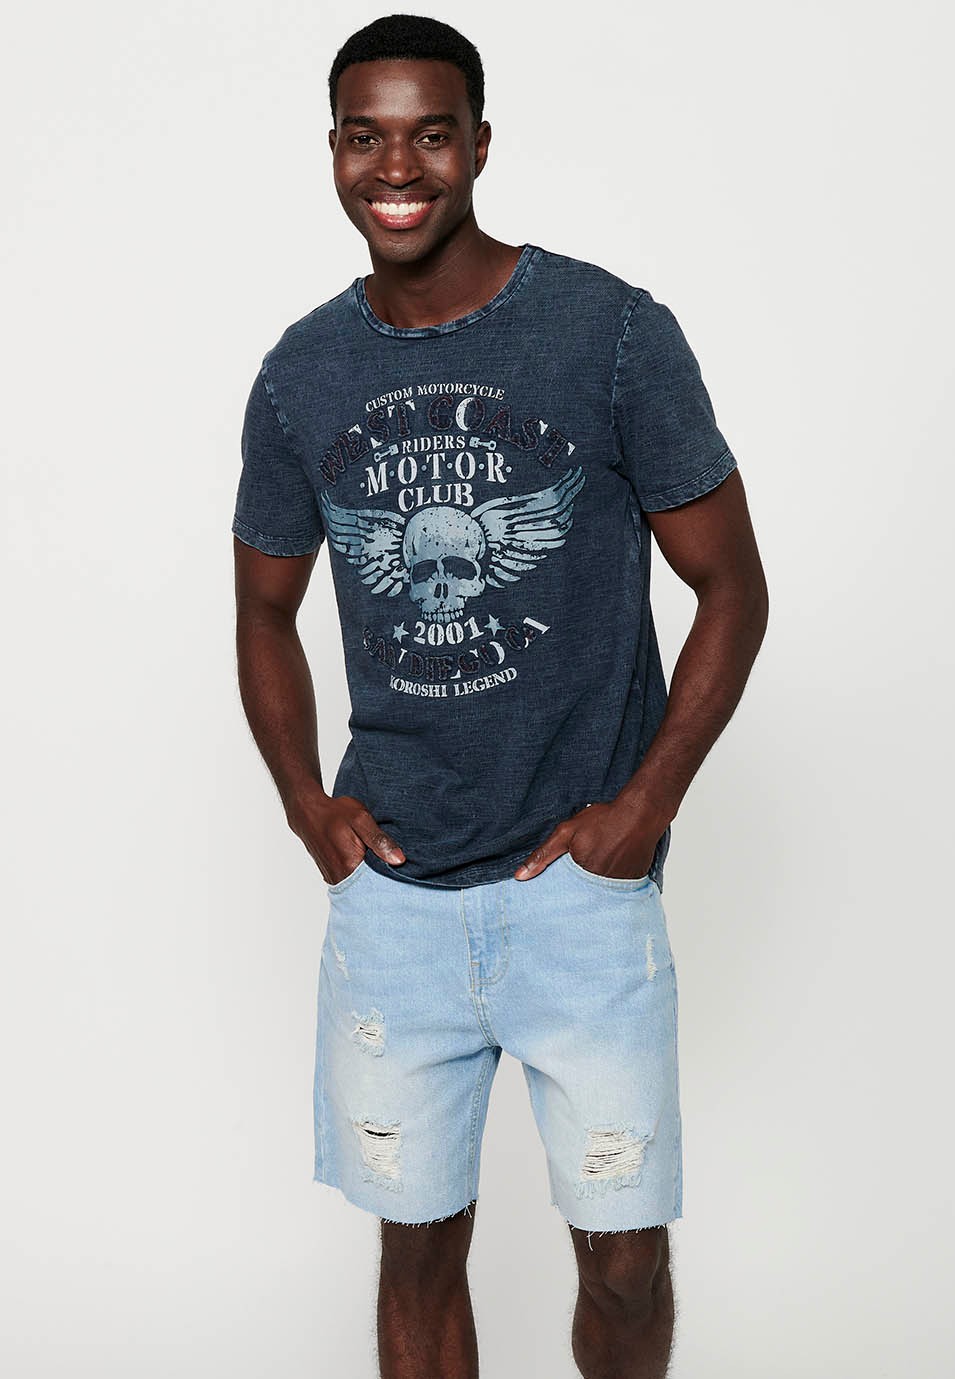 Camiseta de manga corta, estampado frontal y cuello redondo, color azul para hombre